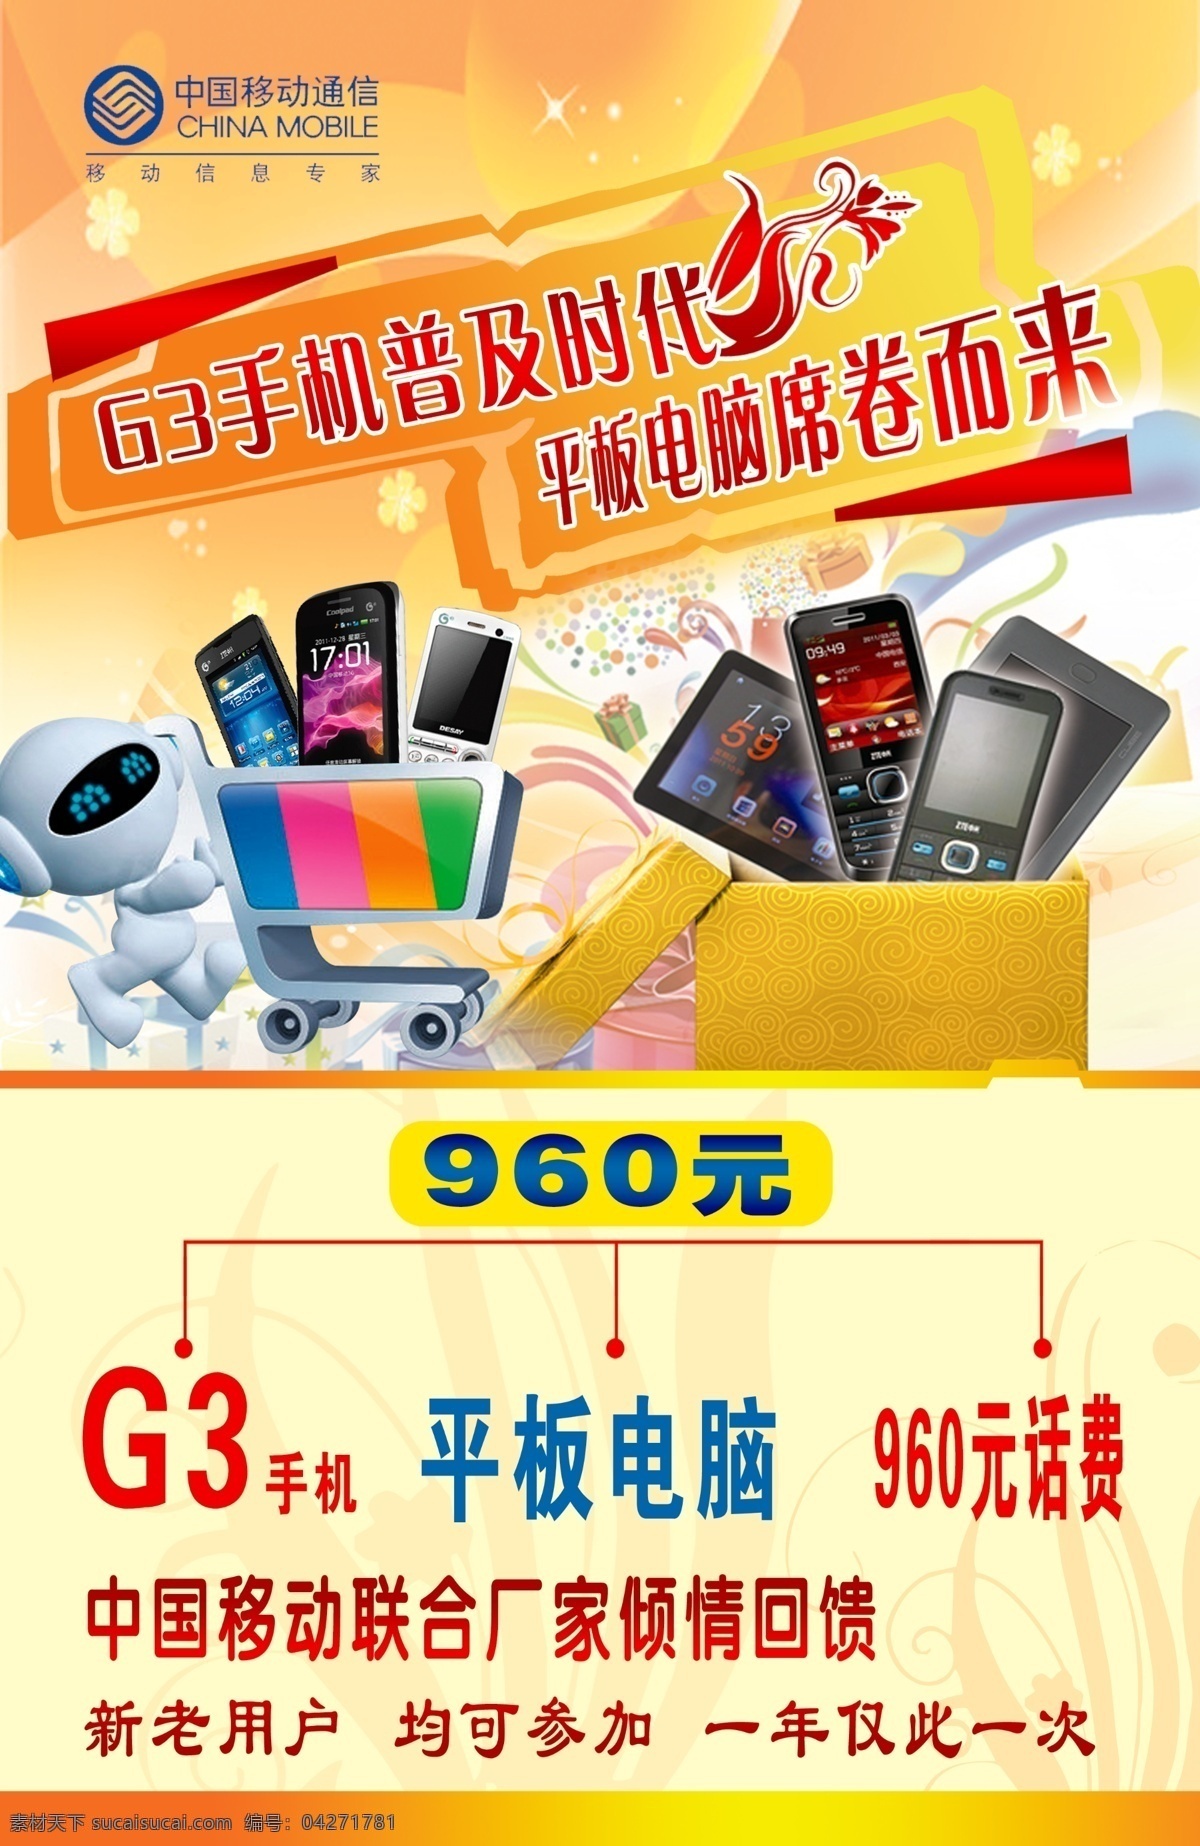 g3风暴 中国移动 移动标志 移动mm 手机图片 花边 橙色背景 平板电脑 礼包 丝带 飘带 智能手机 广告设计模板 源文件